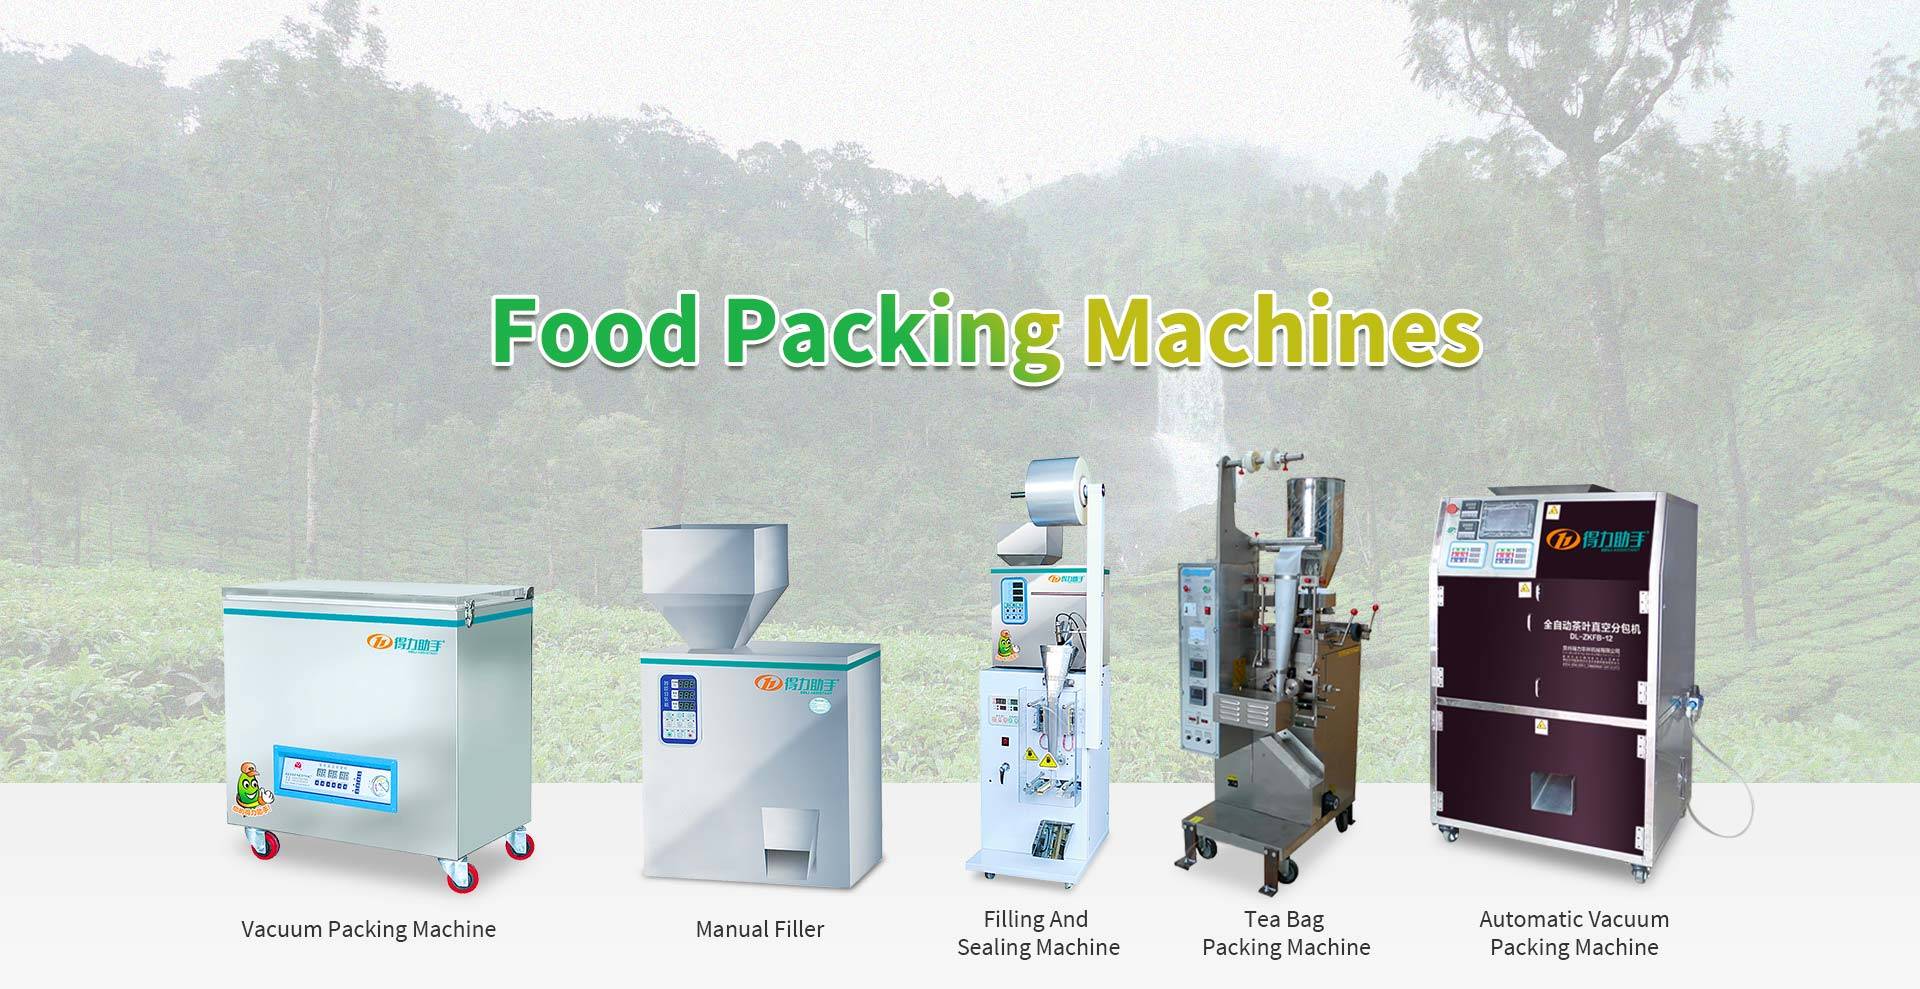 Mašine za pakovanje hrane